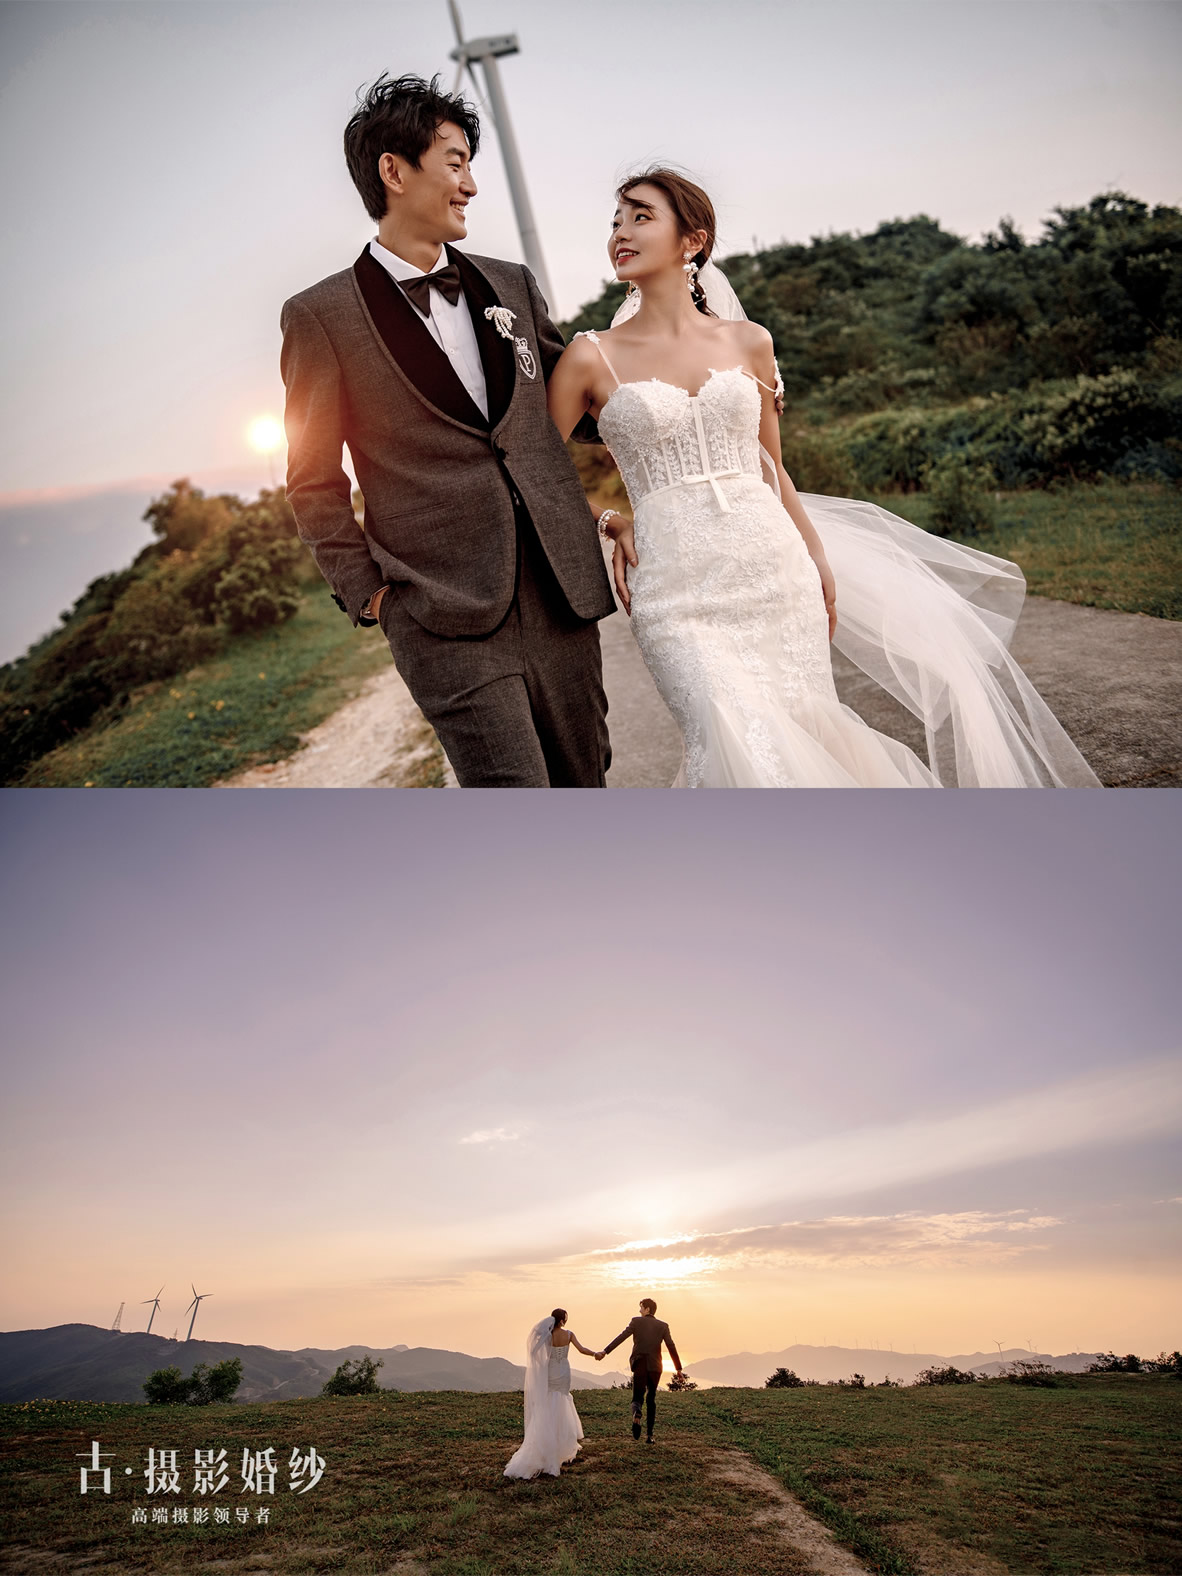 上川岛《风车山》 - 拍摄地 - 广州婚纱摄影-广州古摄影官网